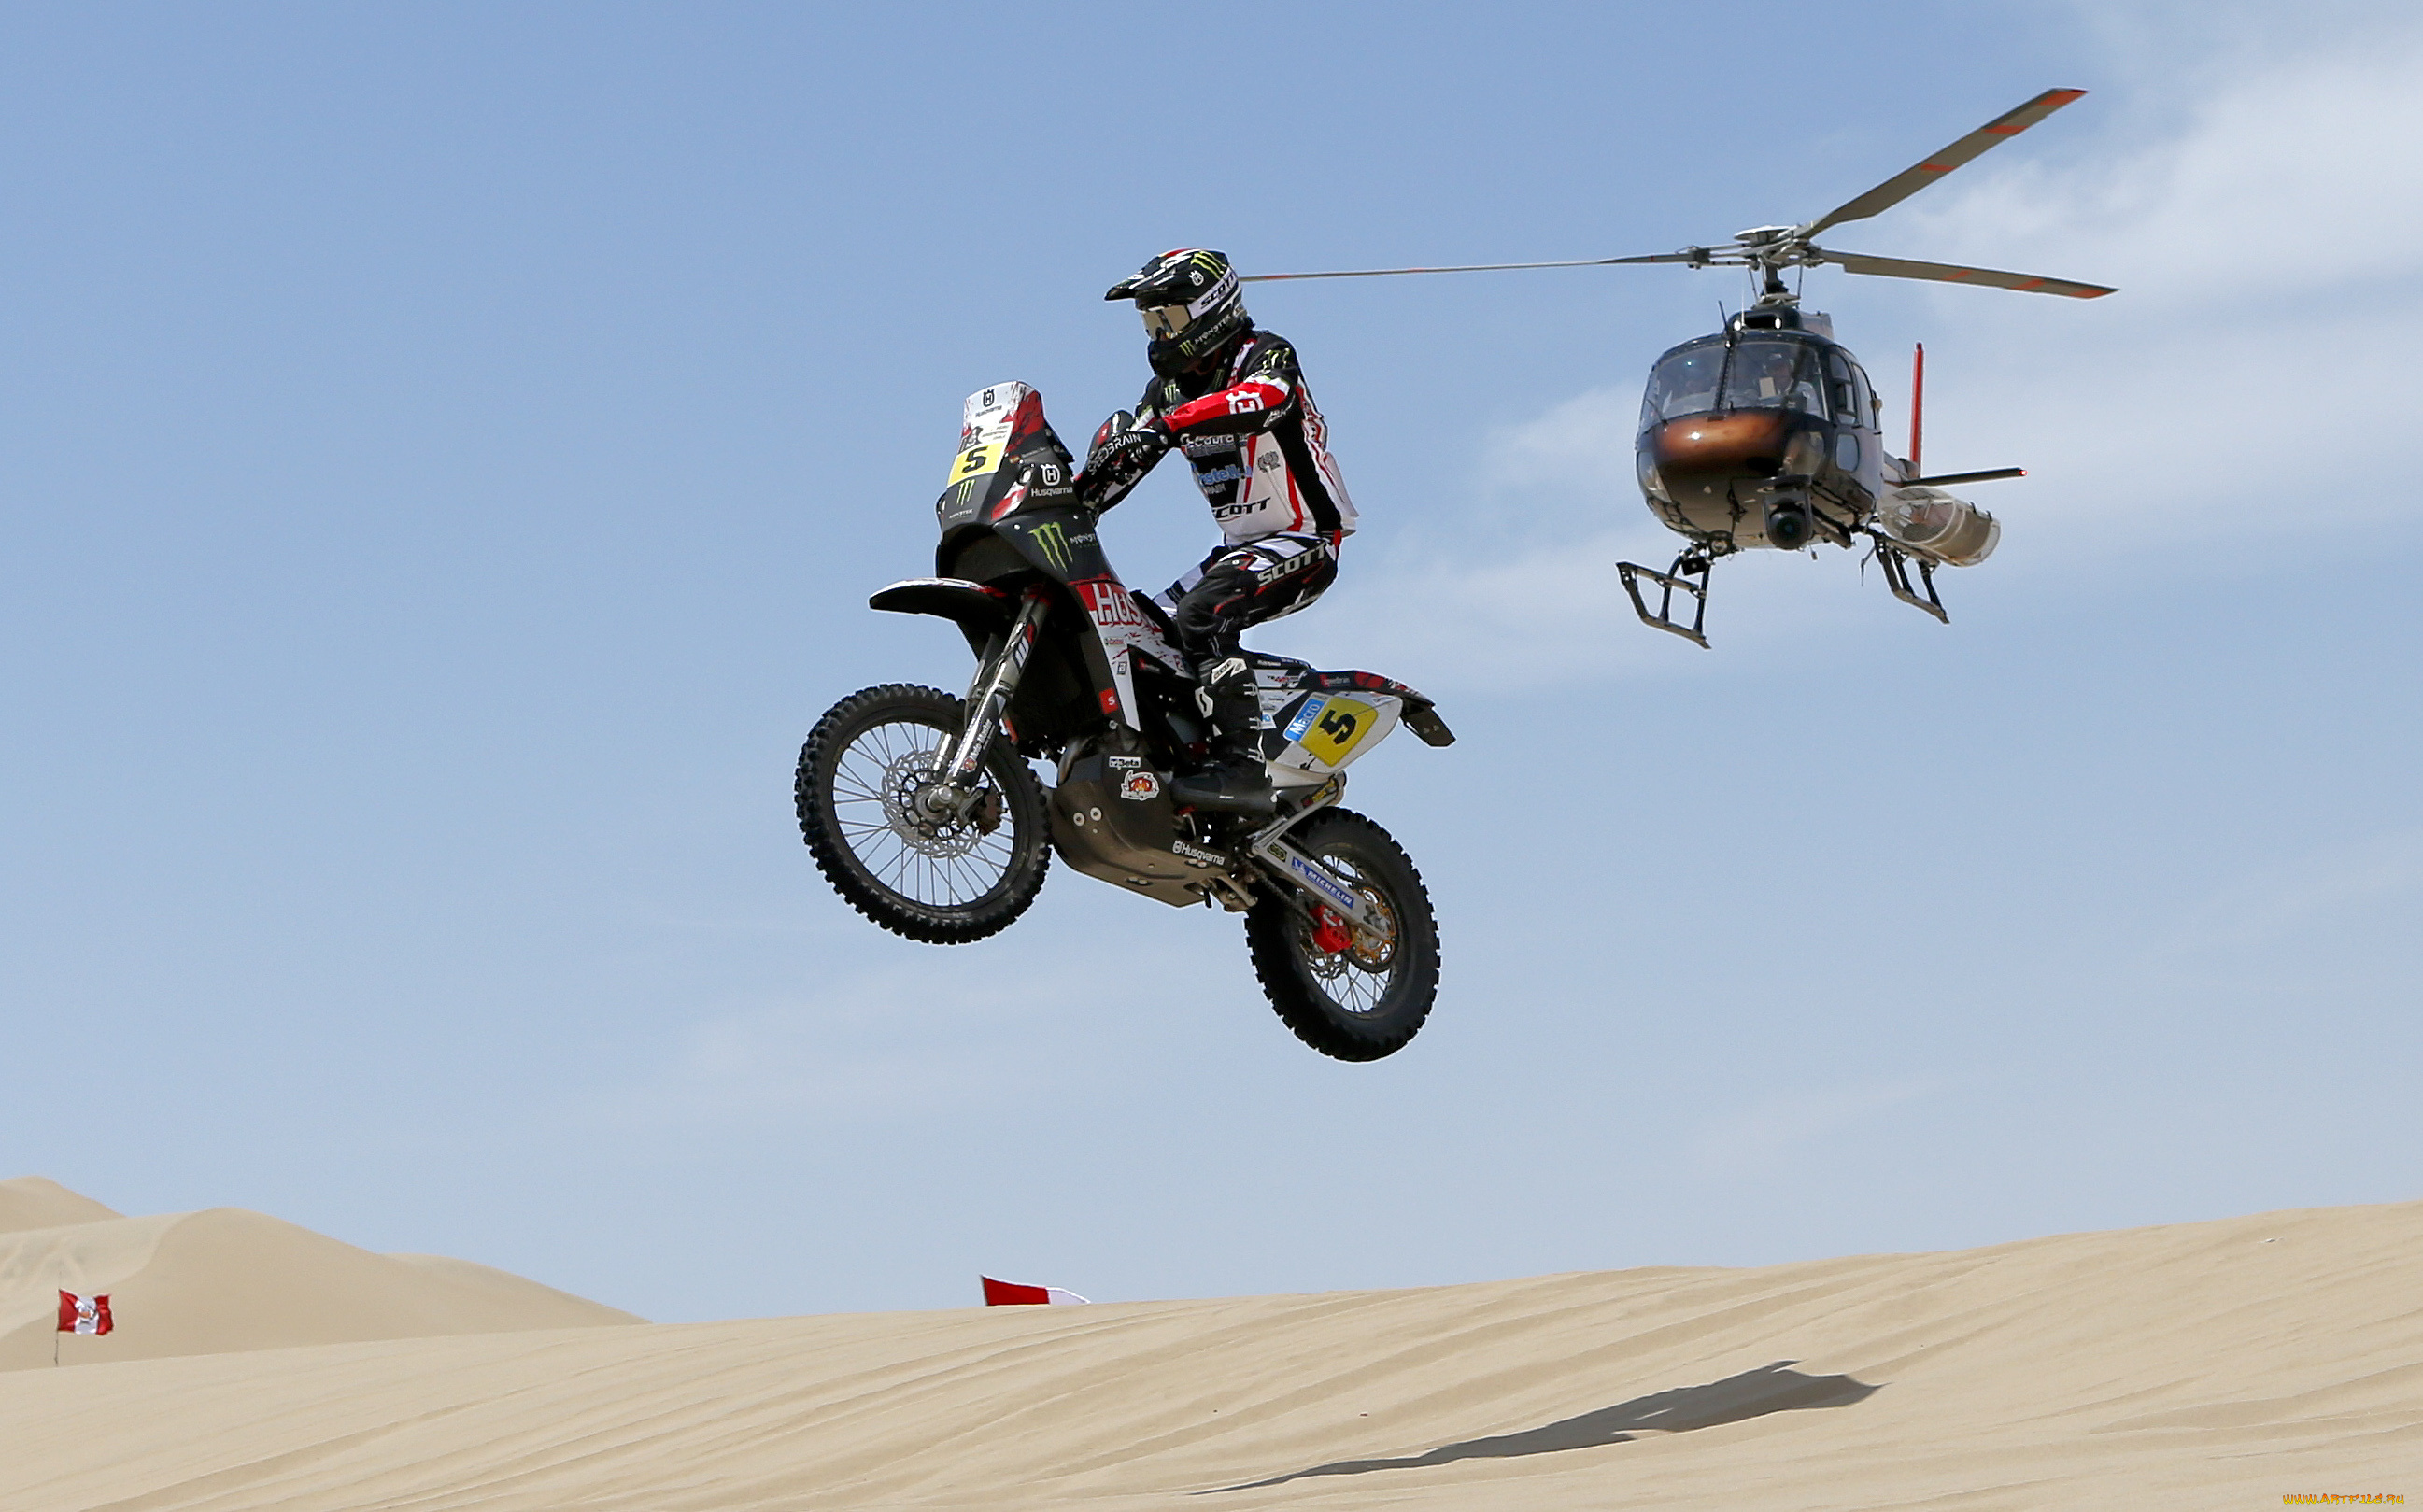 спорт, мотокросс, мотоцикл, вертолет, зависание, песок, дакар, гонка, тень, небо